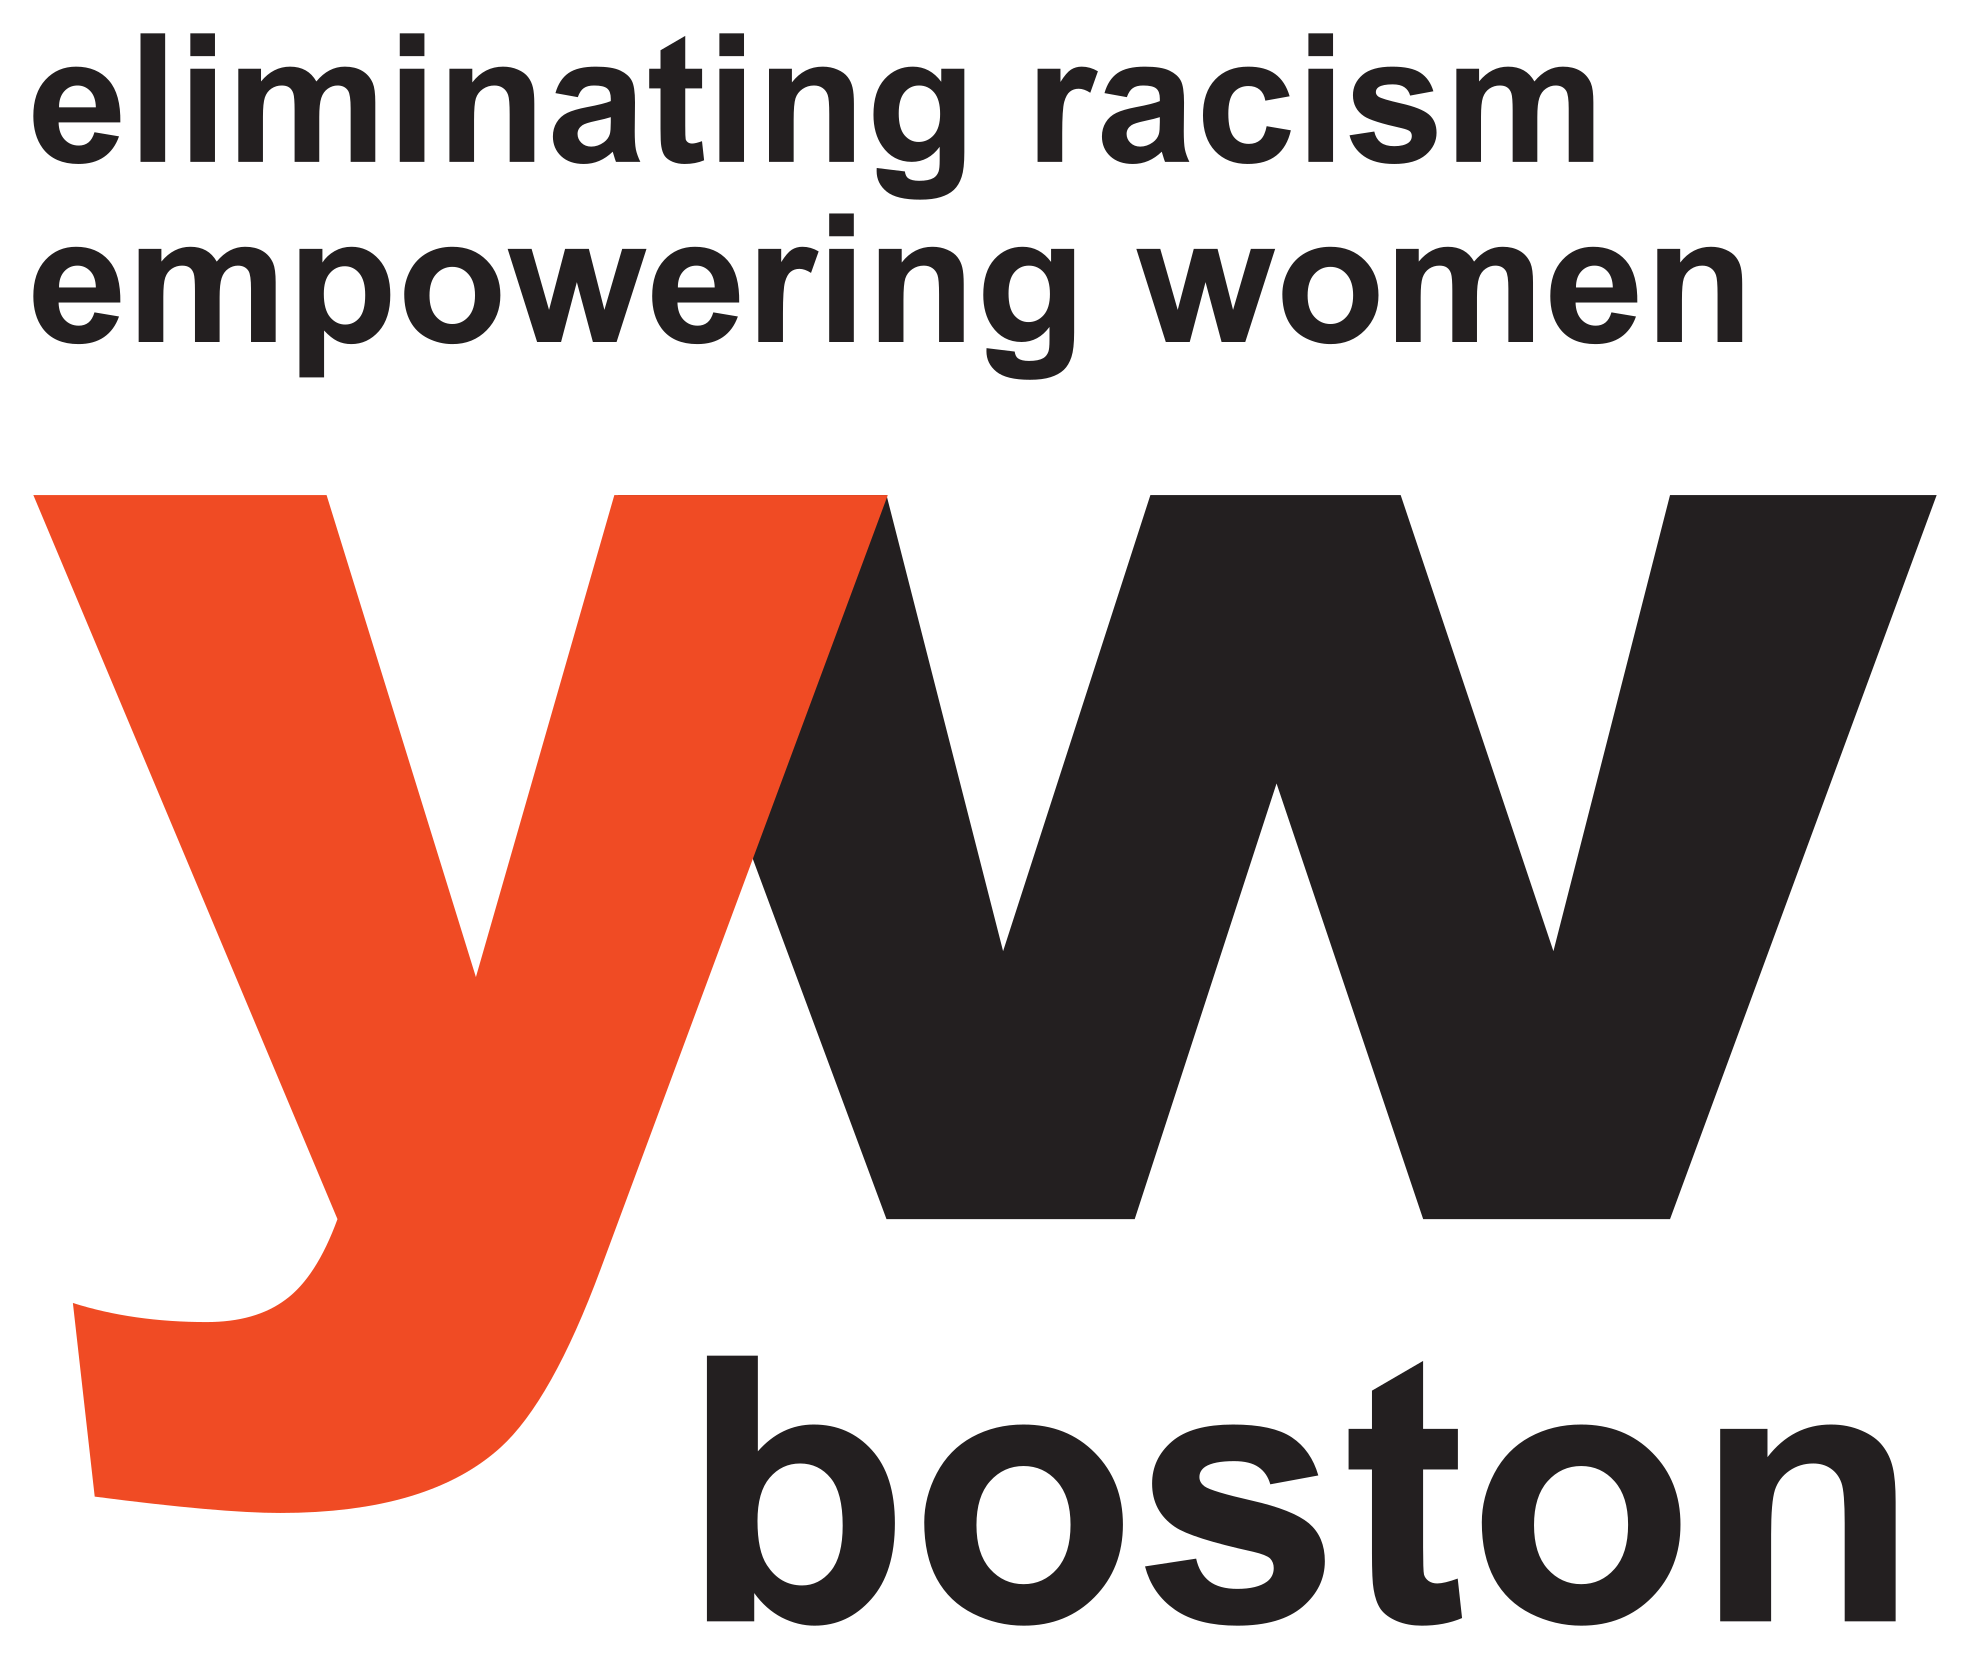 YW Boston logo